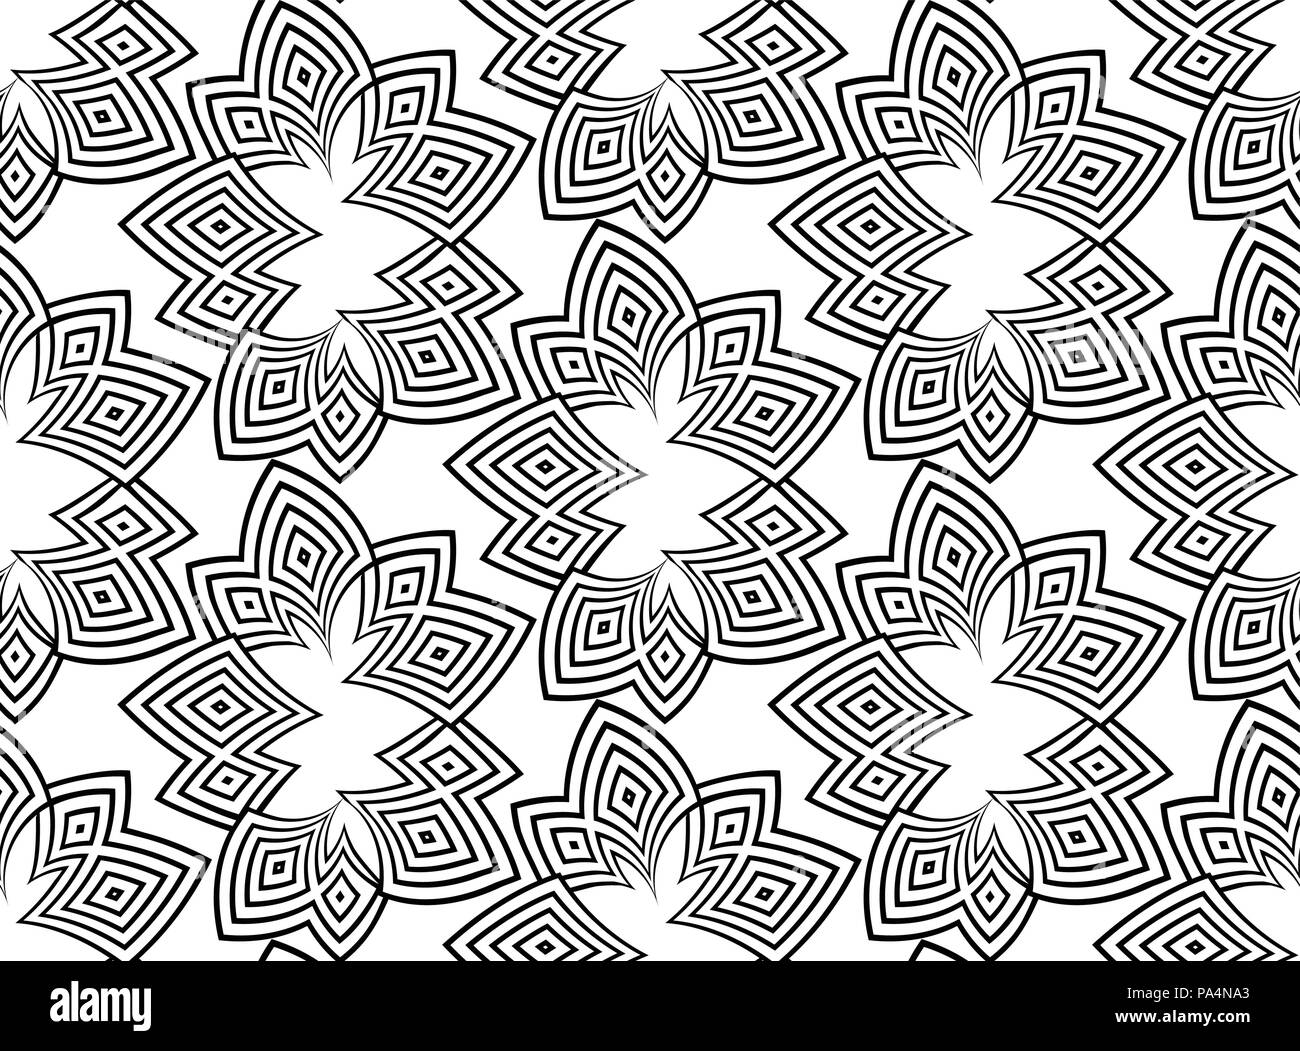 Des lignes noires sur fond blanc motif transparent. Vector abstract background. Psyphodelic motif noir blanc Illustration de Vecteur